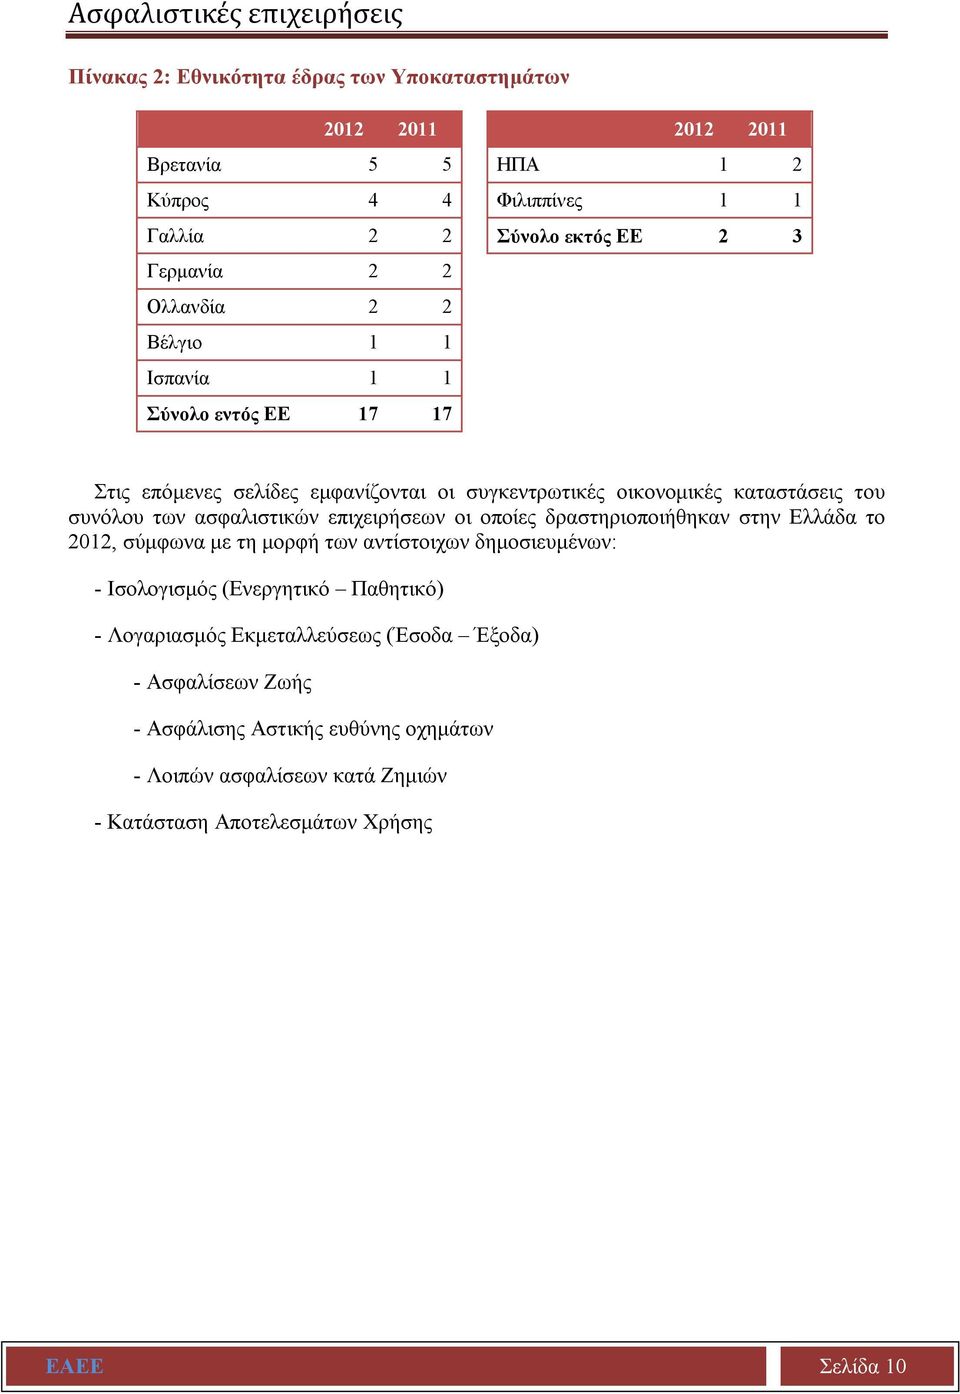 ασφαλιστικών επιχειρήσεων οι οποίες δραστηριοποιήθηκαν στην Ελλάδα το 2012, σύμφωνα με τη μορφή των αντίστοιχων δημοσιευμένων: - Ισολογισμός (Ενεργητικό Παθητικό) -